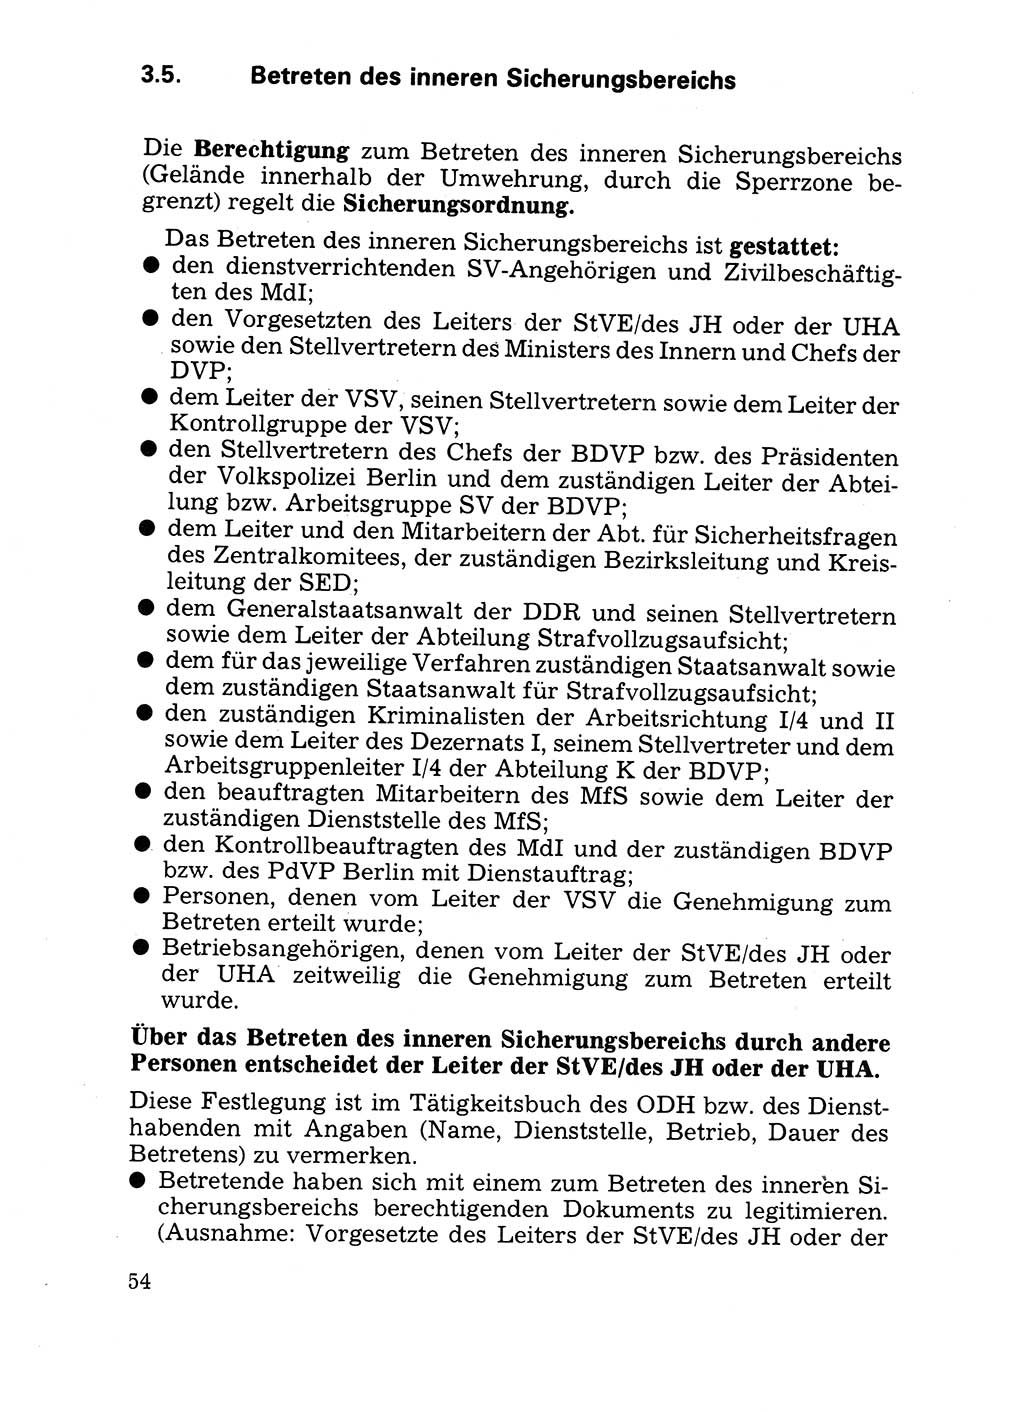 Handbuch für operative Dienste, Abteilung Strafvollzug (SV) [Ministerium des Innern (MdI) Deutsche Demokratische Republik (DDR)] 1981, Seite 54 (Hb. op. D. Abt. SV MdI DDR 1981, S. 54)